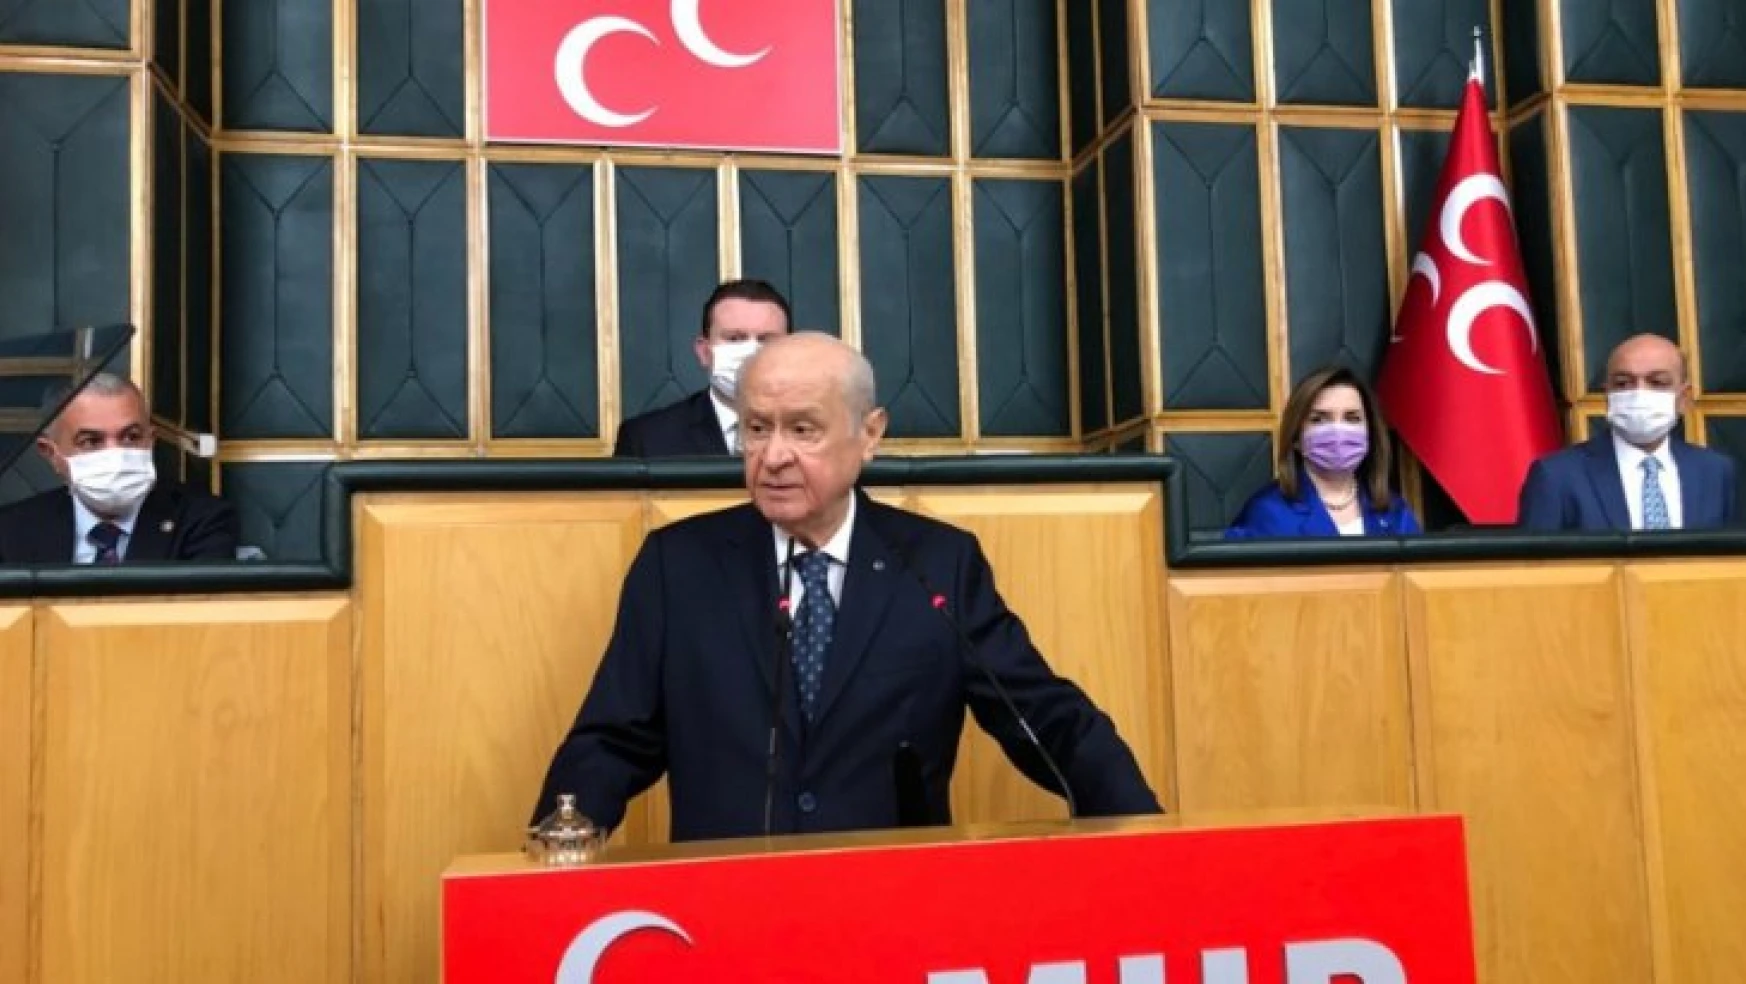 MHP Lideri Bahçeli: 6 partinin ortak bildirisi evlere şenliktir, tutarsızlıktır